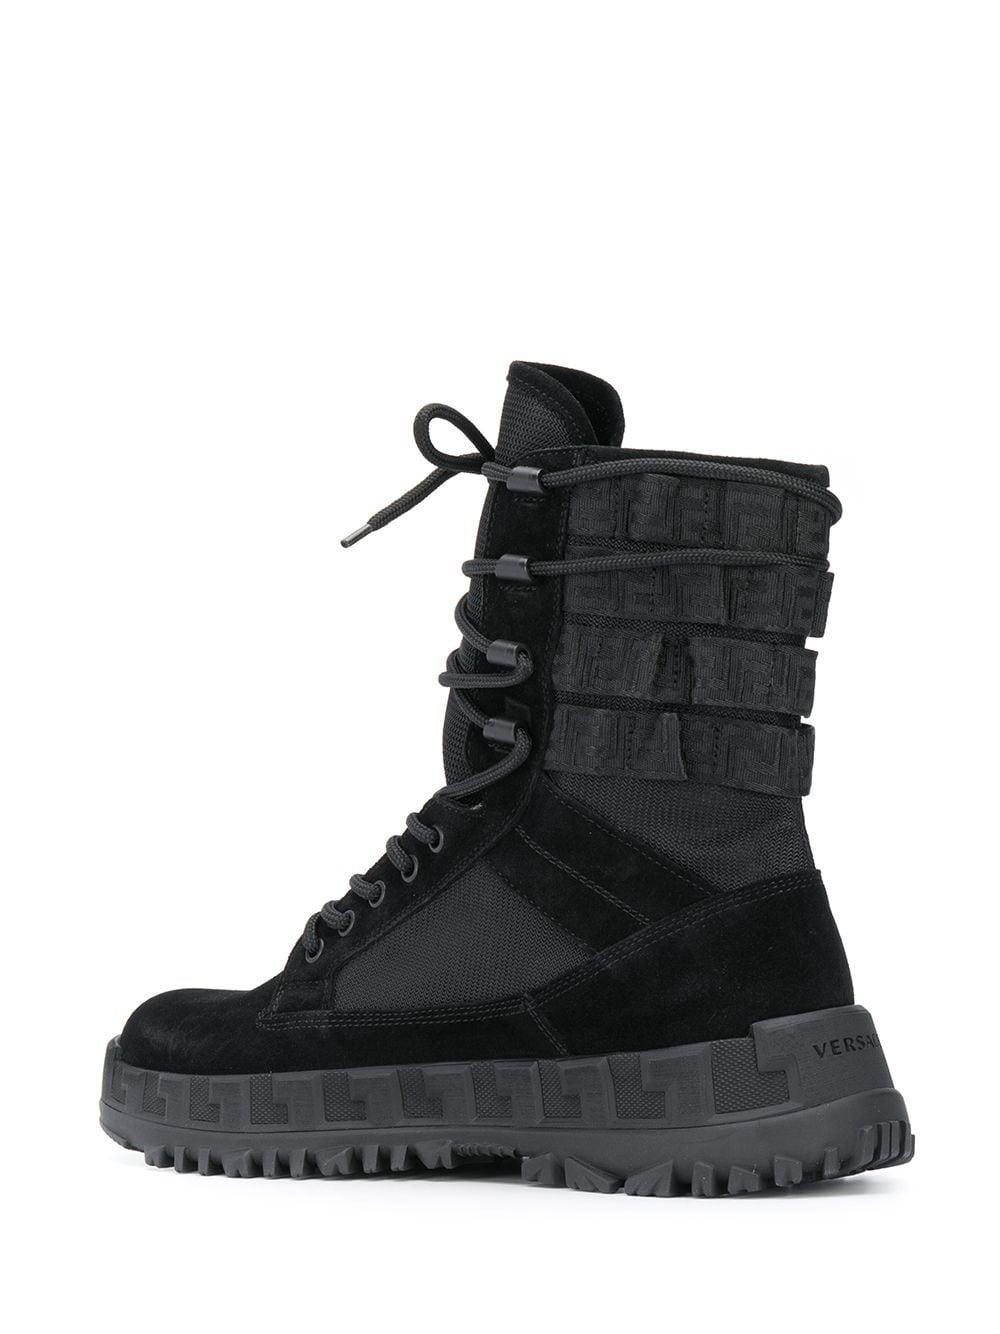 versace boots men